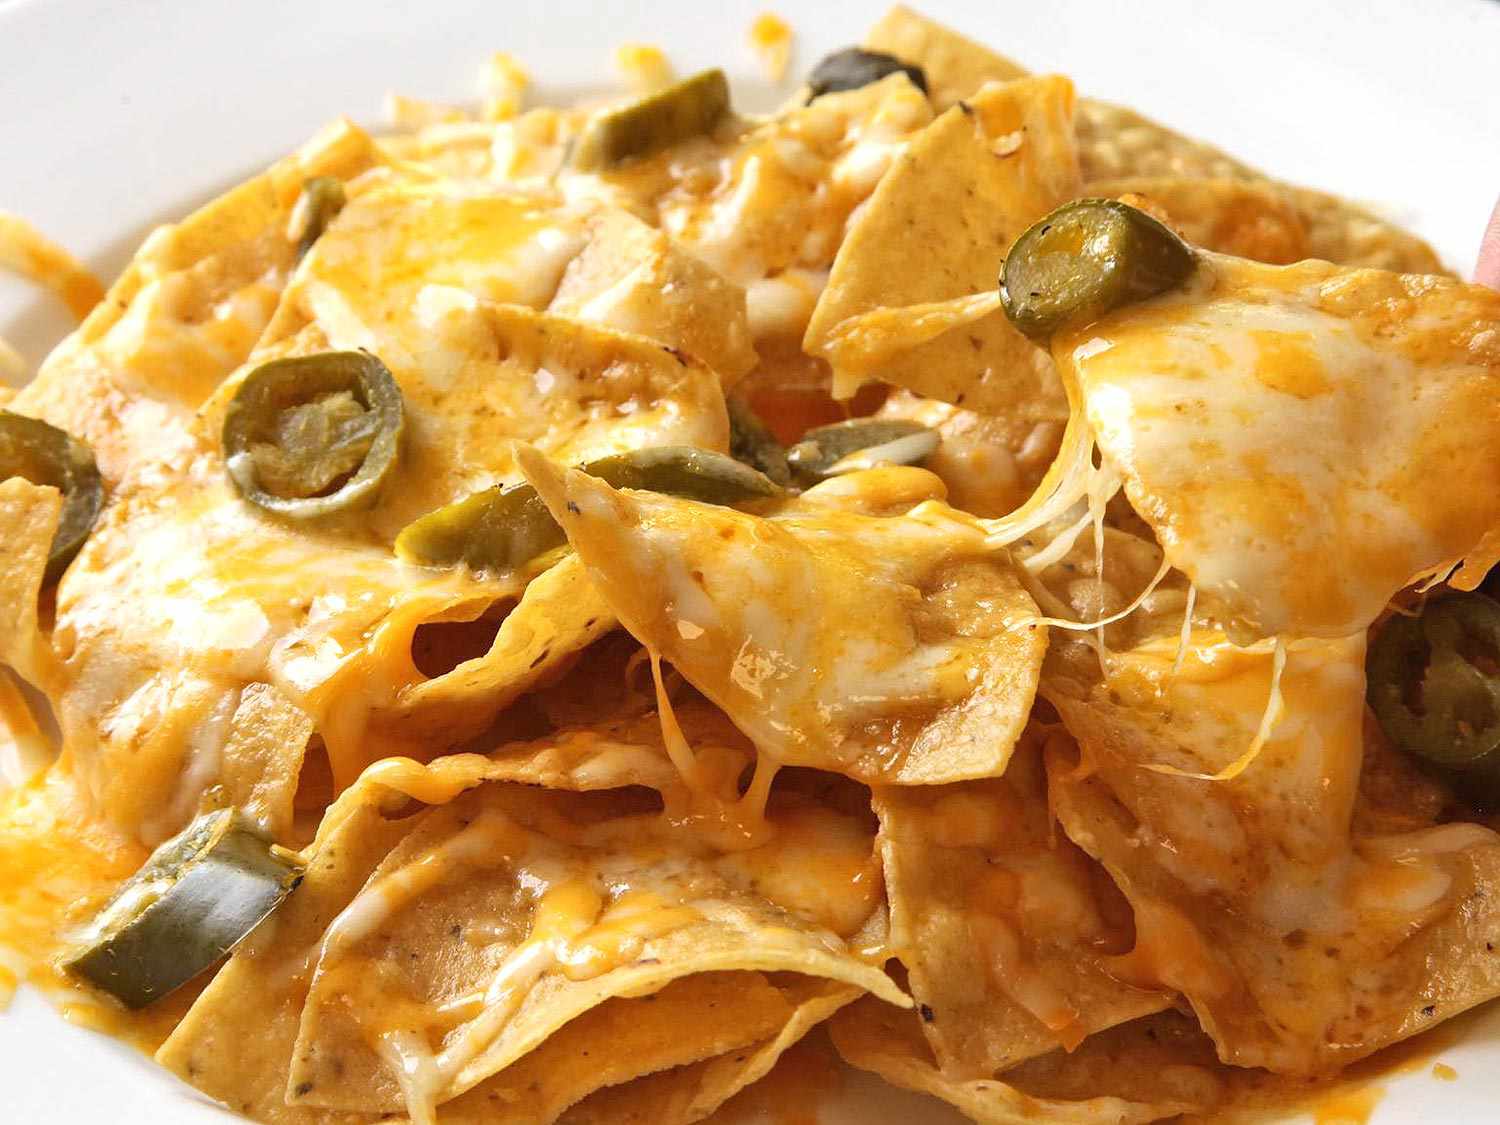 A plate of nachos.